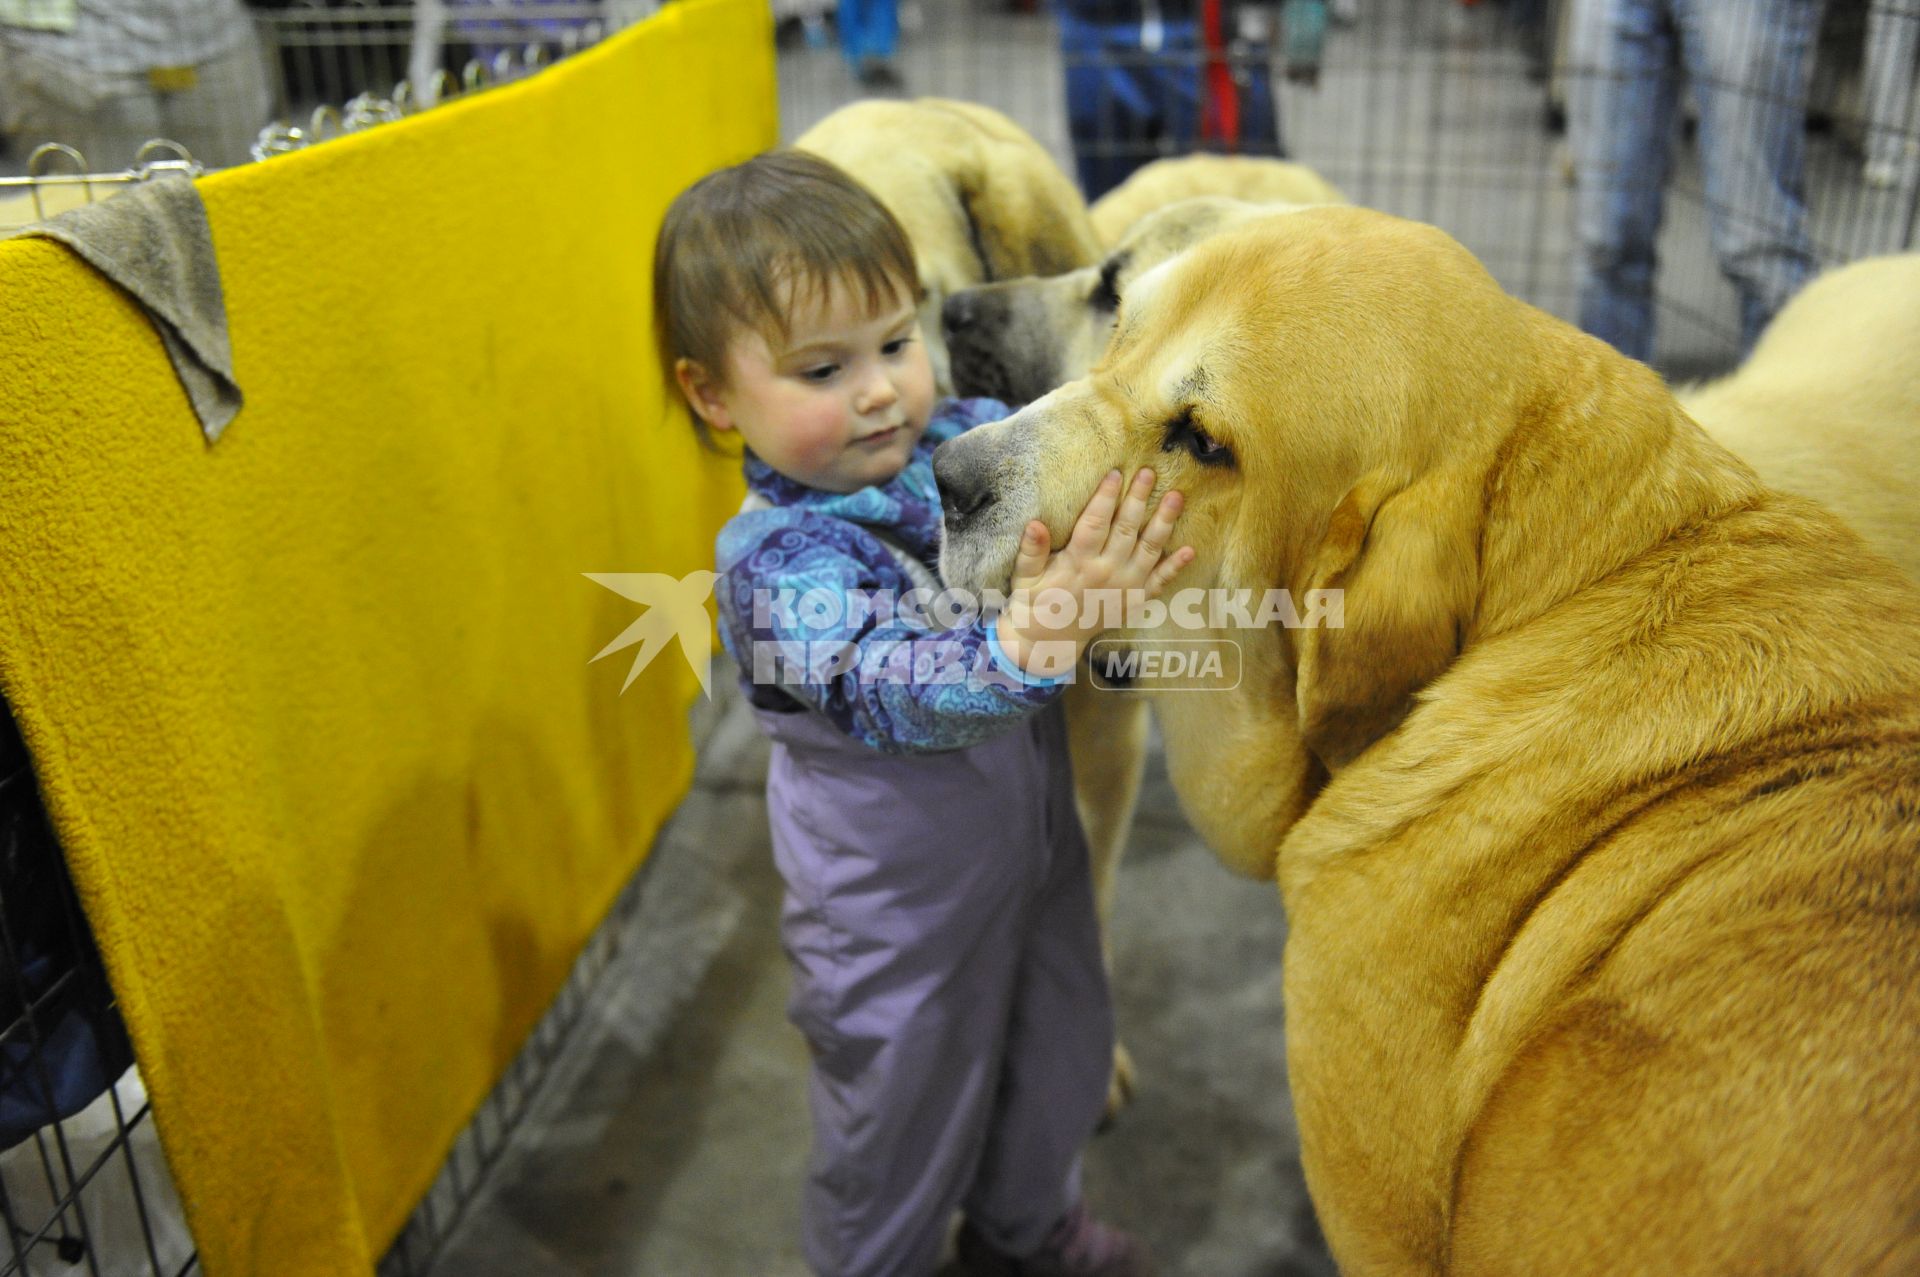 МВЦ `Крокус Экспо`. Международная выставка собак `Евразия 2014`. На снимке: маленькая девочка гладит собаку.